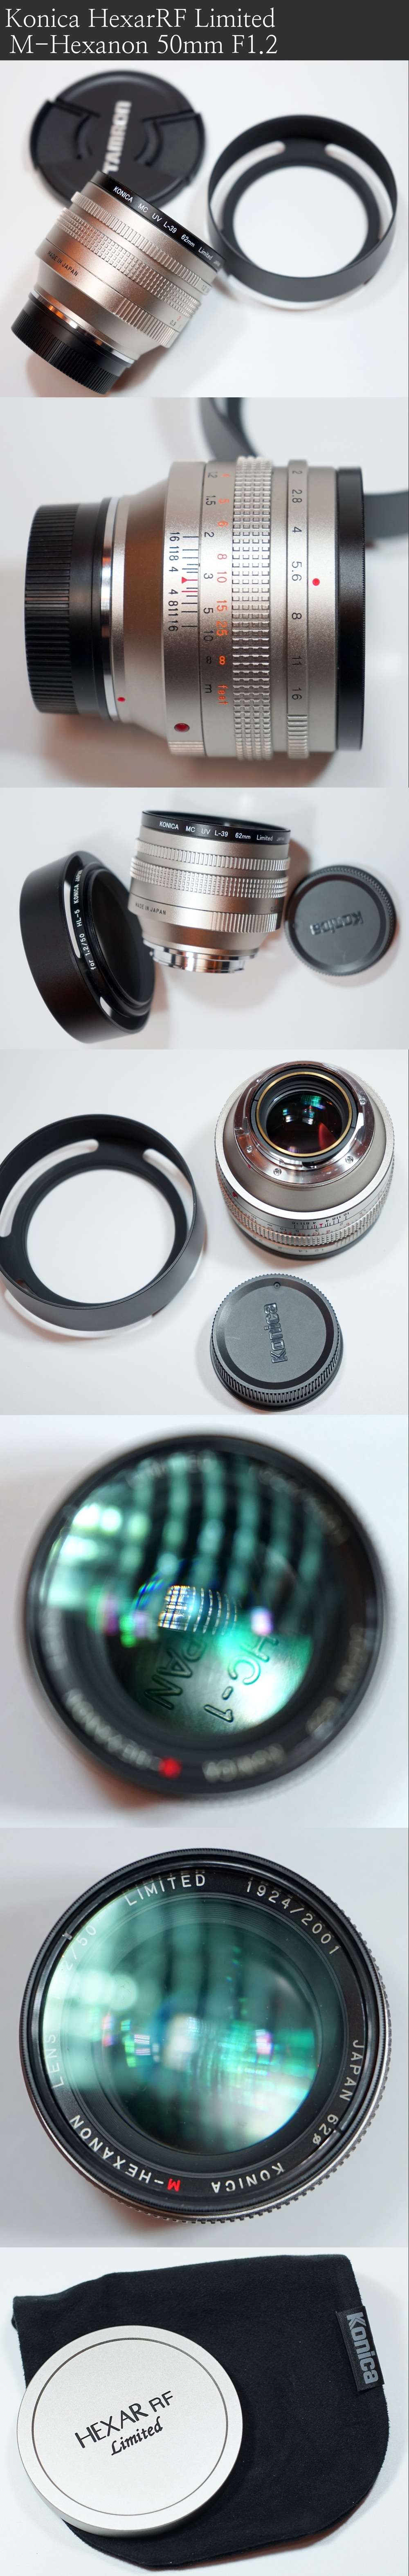 라이카 M6 블랙 0.85 TTL (390),헥사RF 기념바디(350) (Leica M6 Black 0.85 TTL,HexarRF Limited Set) Photo-Image